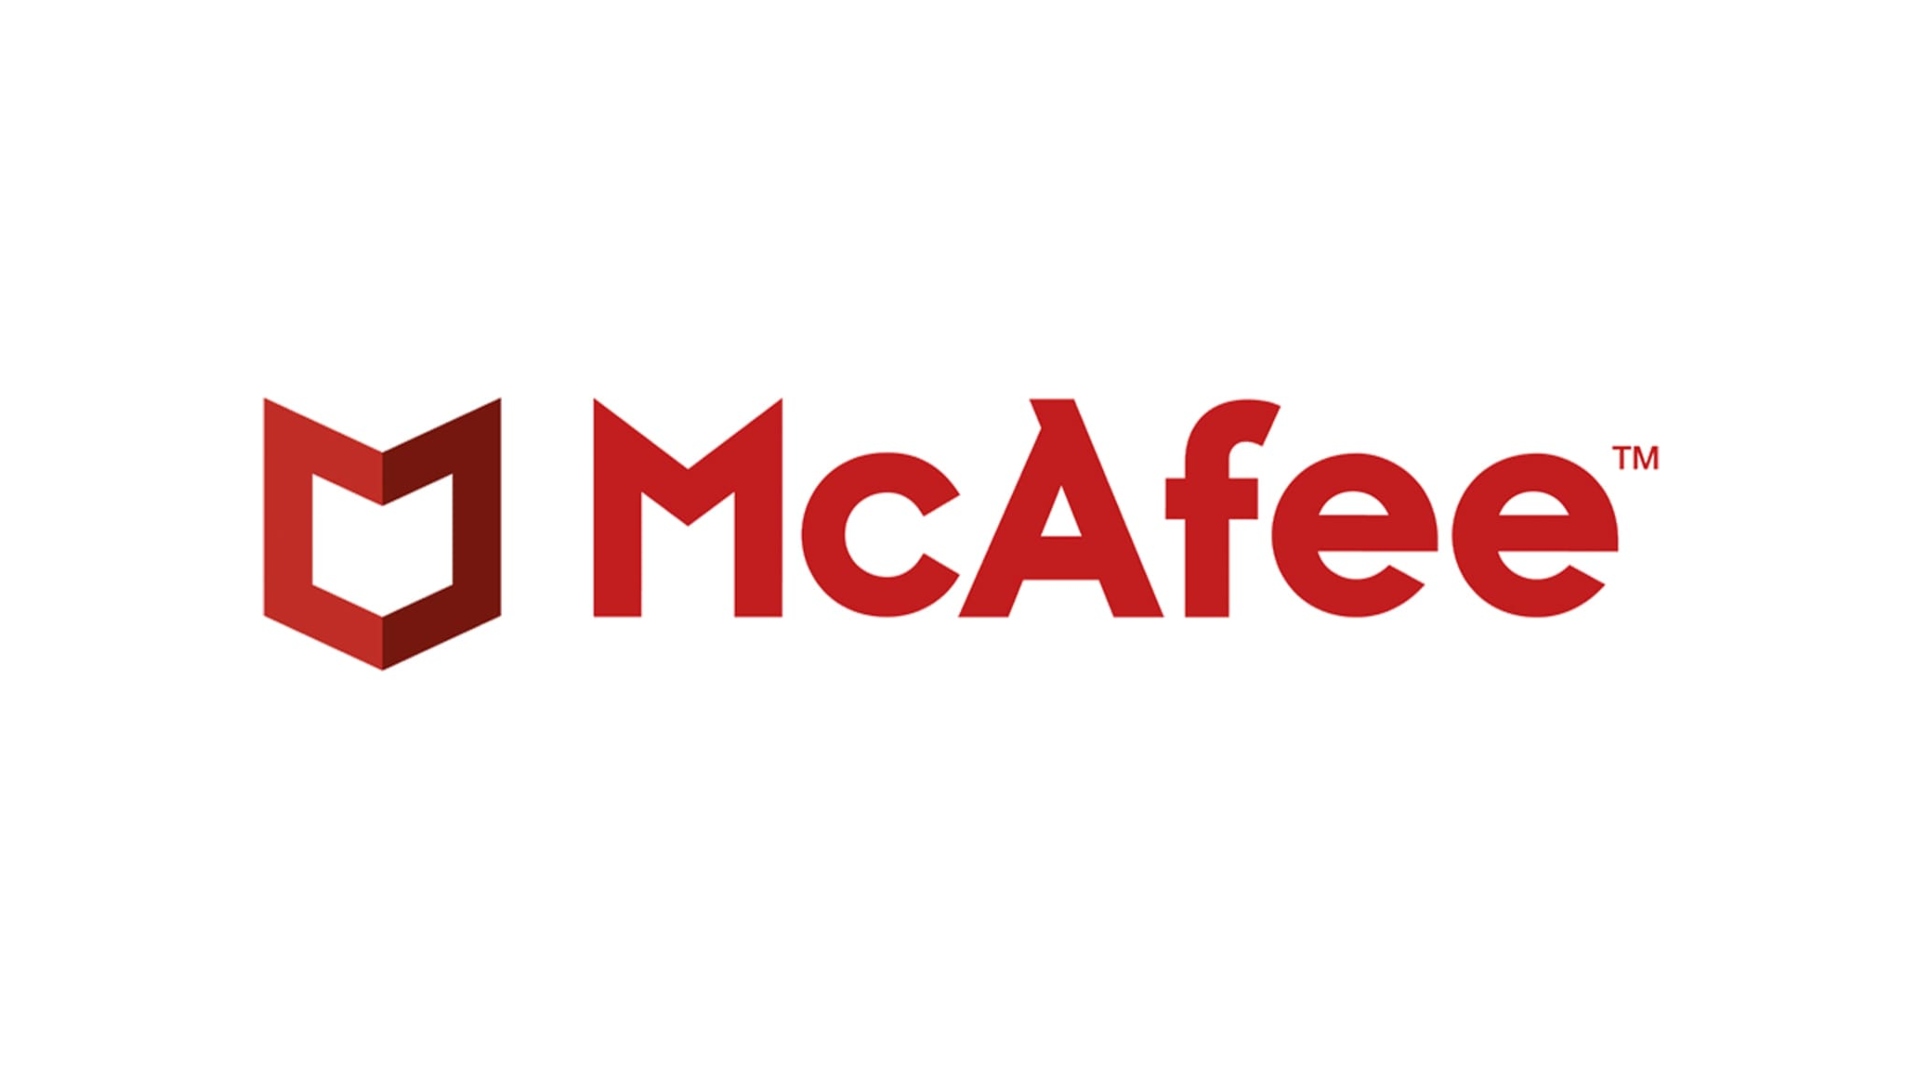 Antivirus ที่ดีที่สุด: McAfee เขียนด้วยสีแดงบนพื้นหลังสีขาวข้างเครื่องราชอิสริยาภรณ์